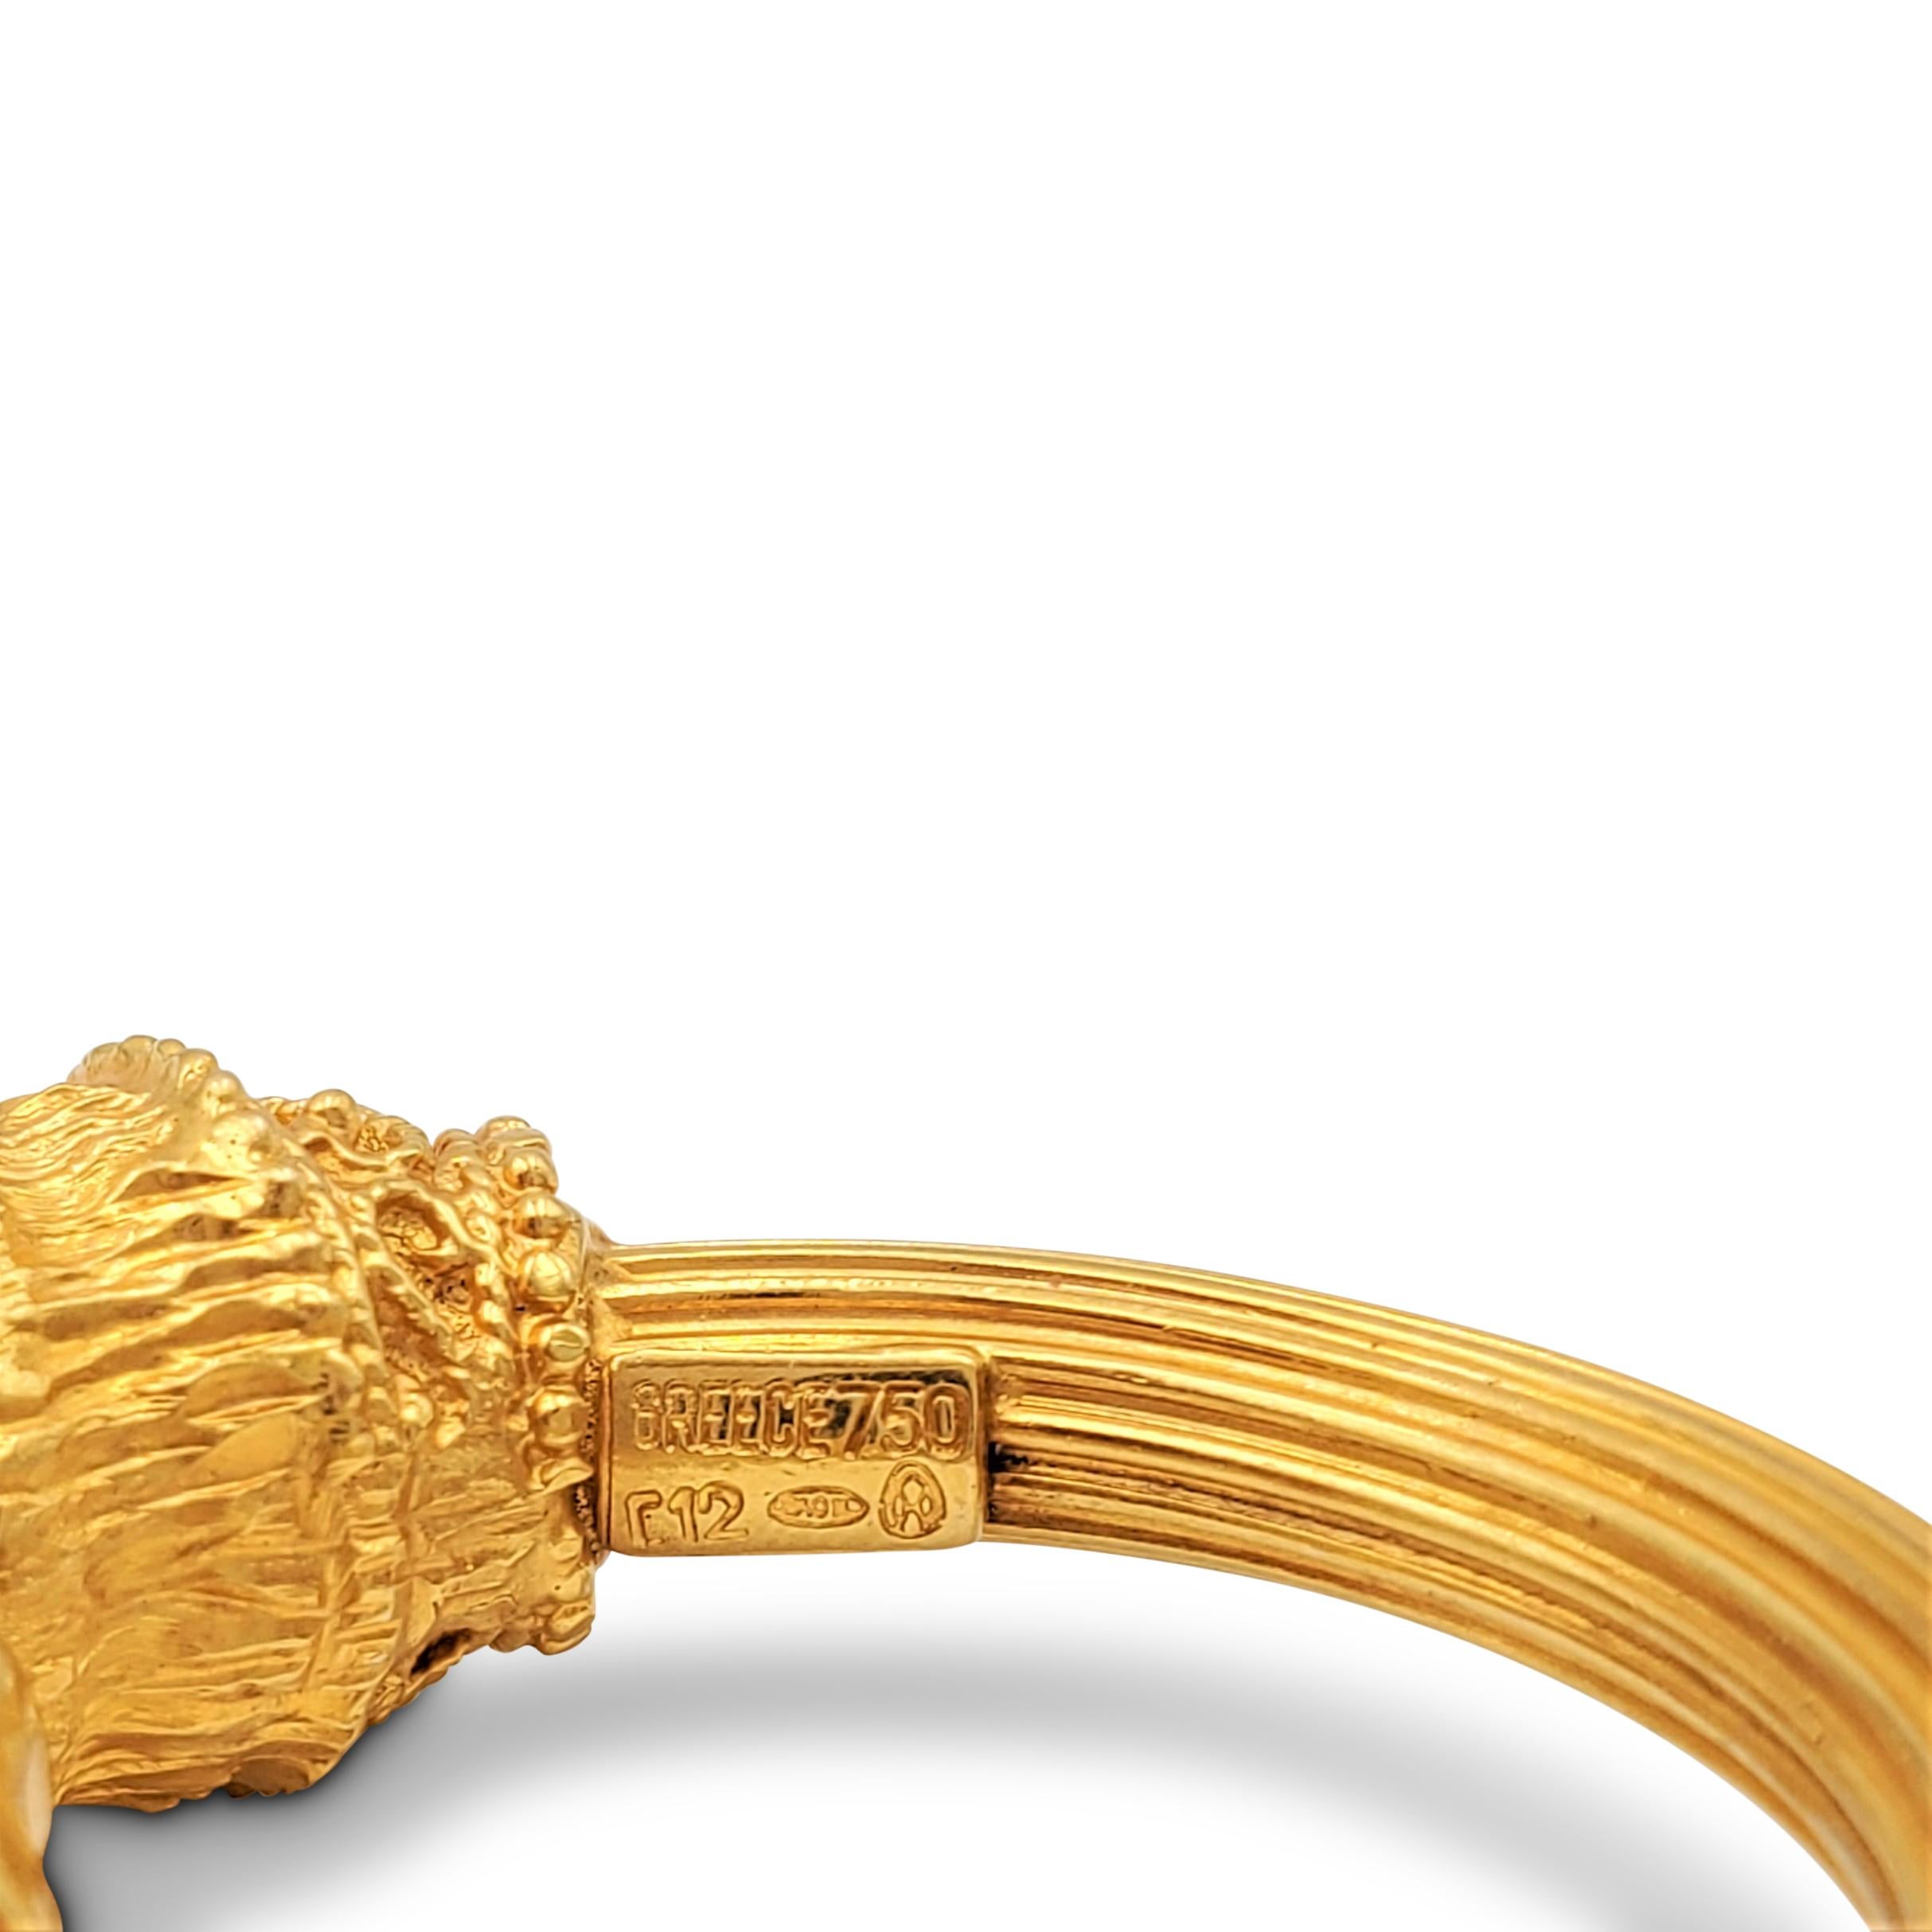 lion earrings gold